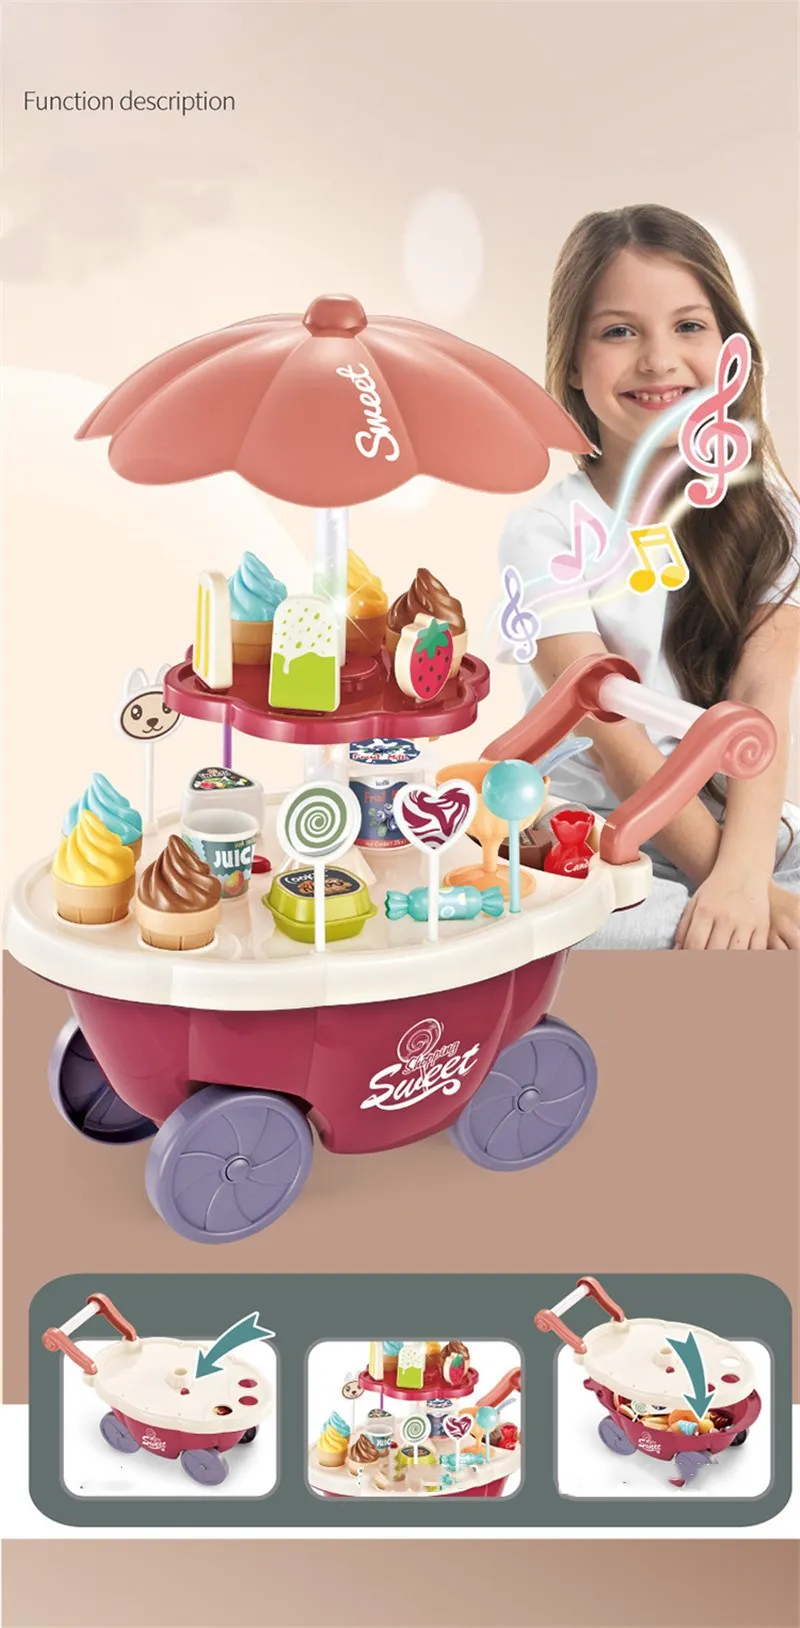 pces sorvete doces trole casa jogar brinquedos doces carro sorvete carrinho de doces casa cérebro jogo crianças brinquedos presente das crianças conjunto